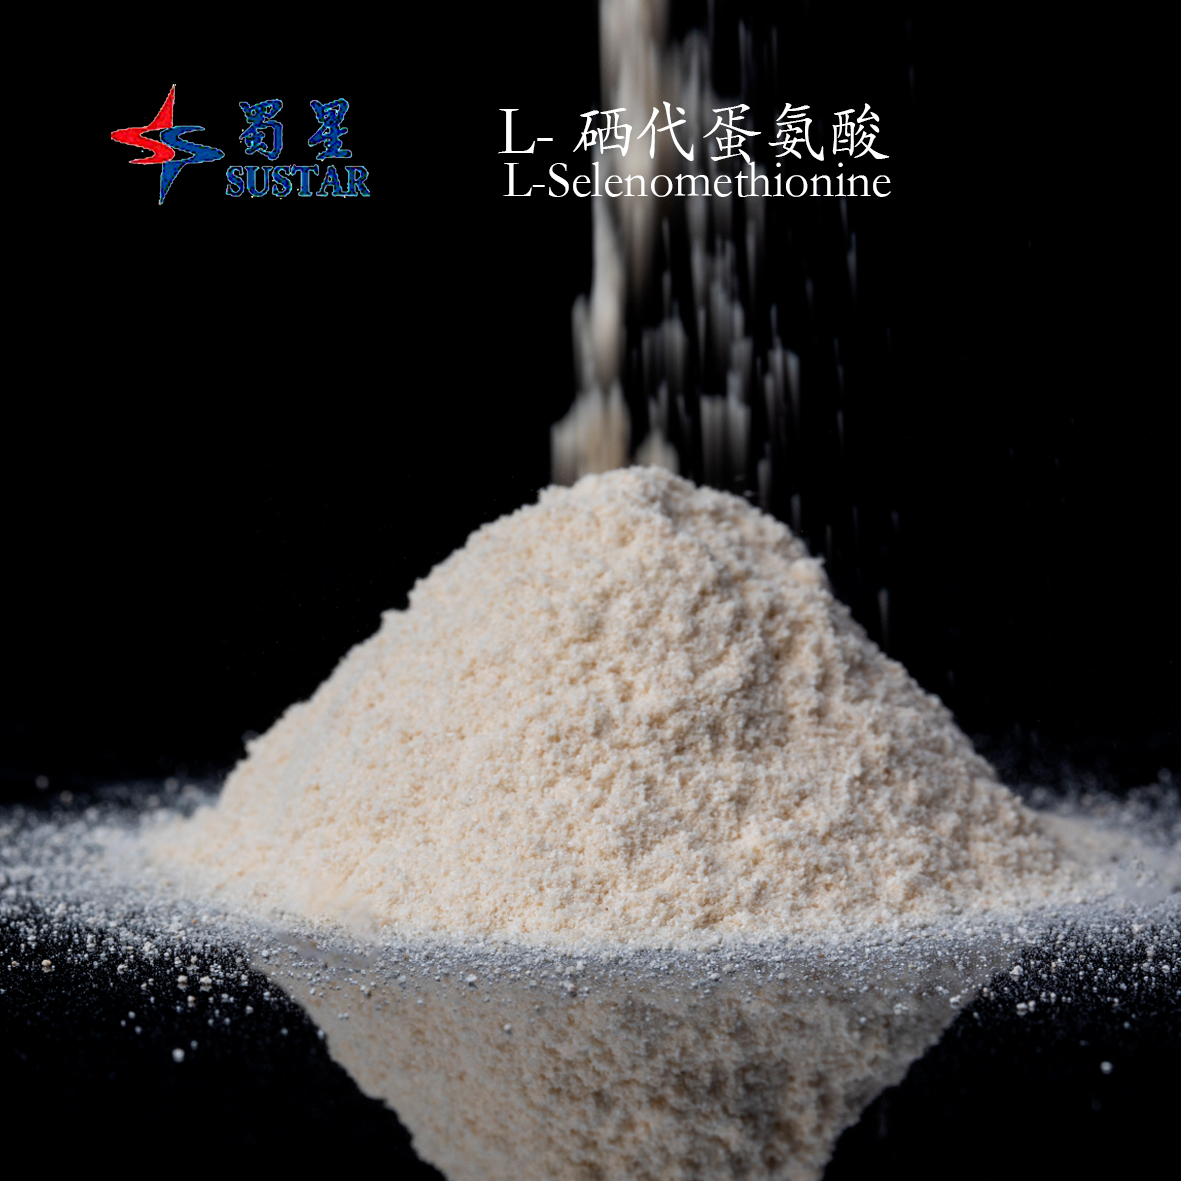 L-selenomethionine Gray White Powder Animal Feed Additive Featured Image